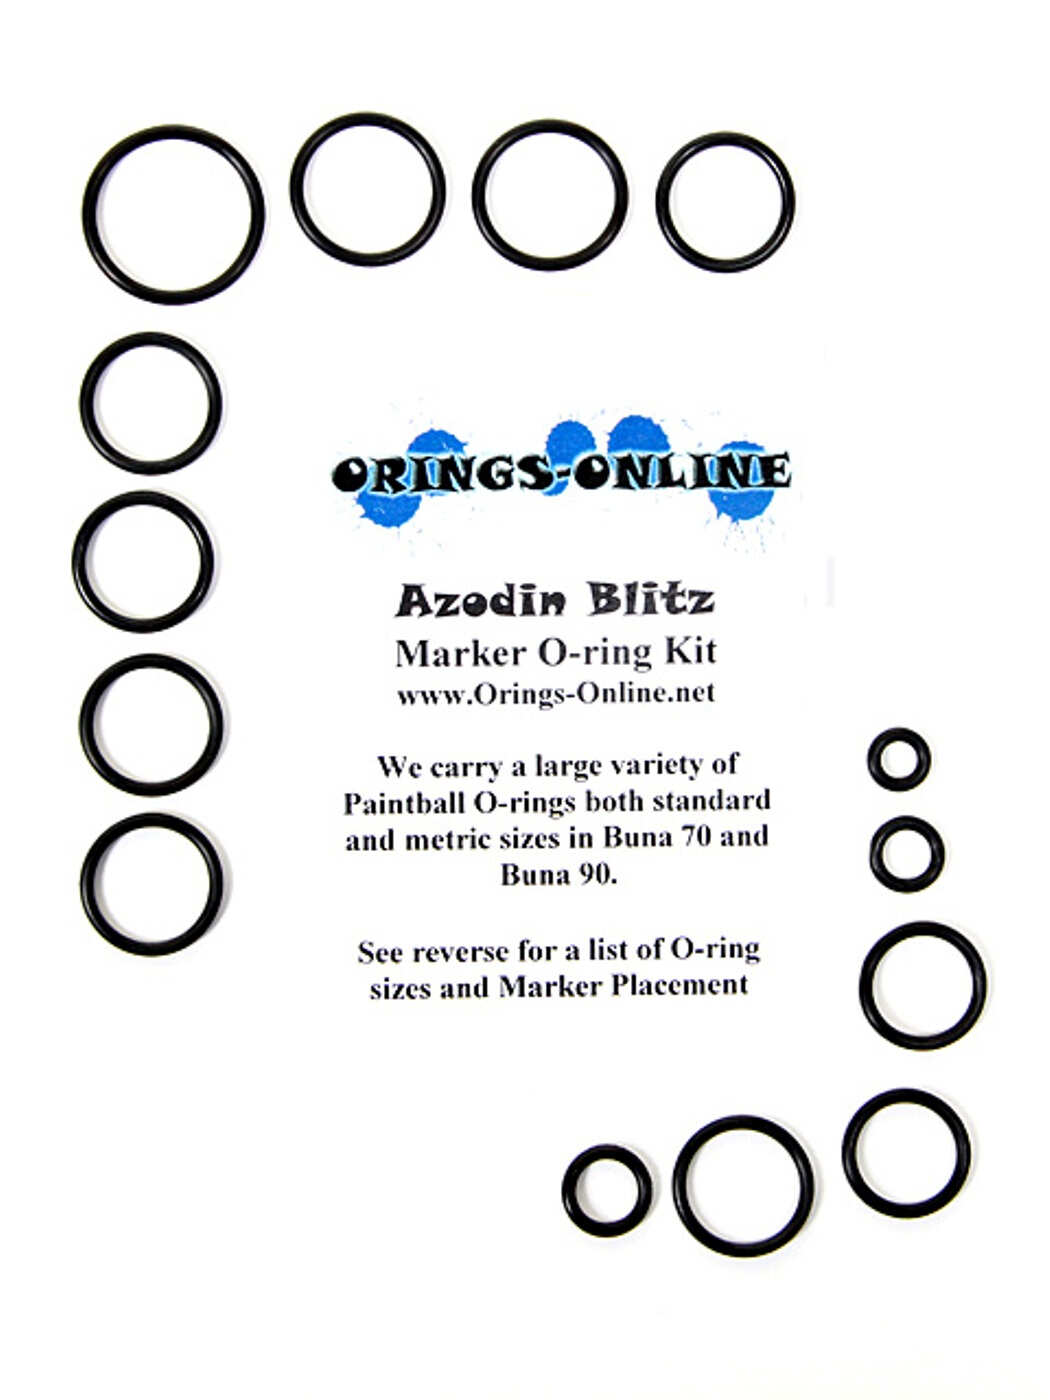 Azodin Blitz Marker O-ring Kit